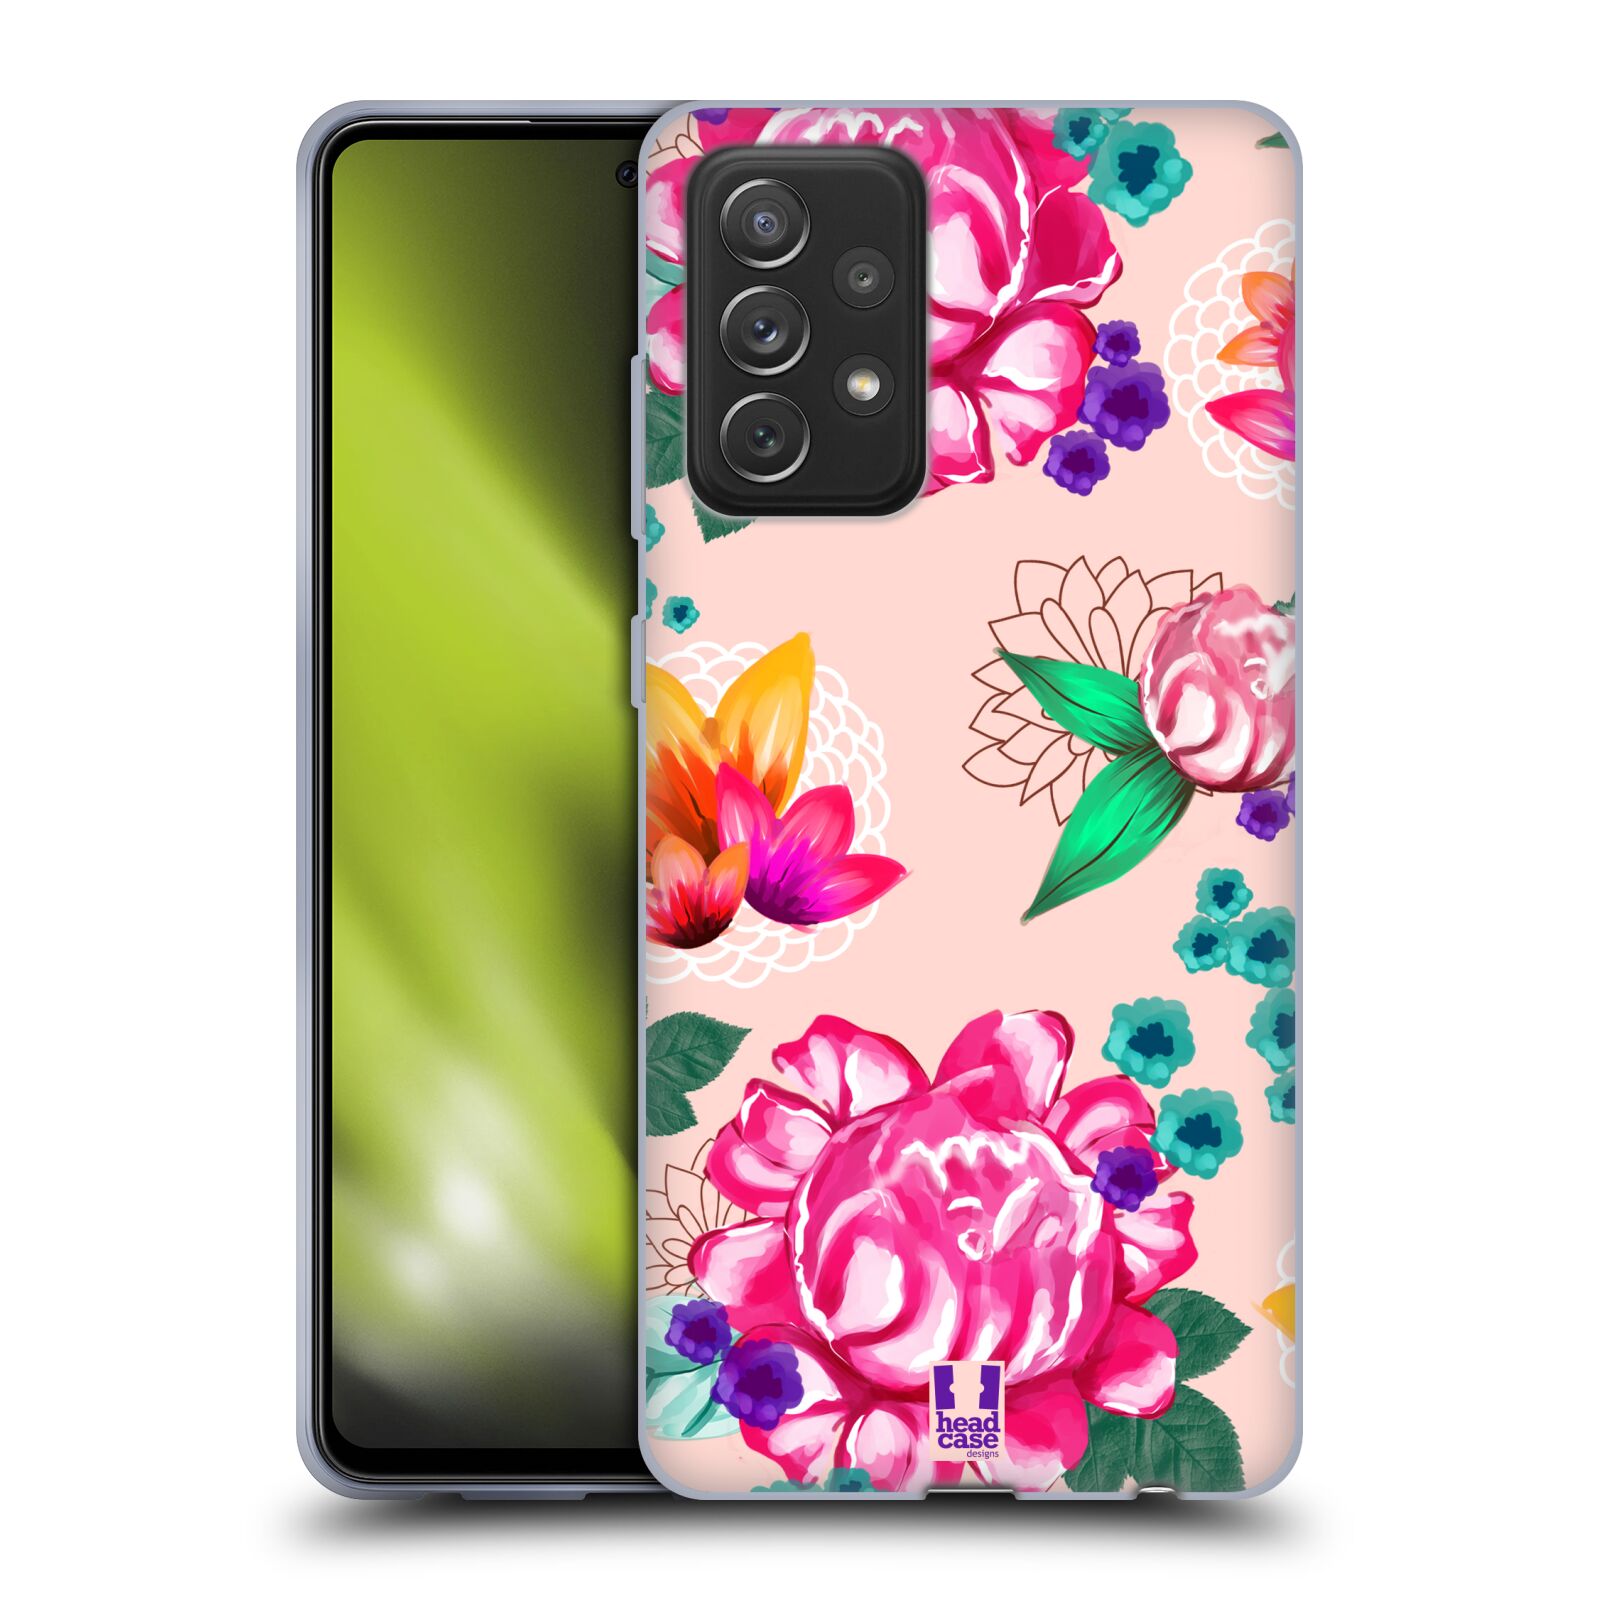 Plastový obal HEAD CASE na mobil Samsung Galaxy A72 / A72 5G vzor Malované květiny barevné SVĚTLE RŮŽOVÁ